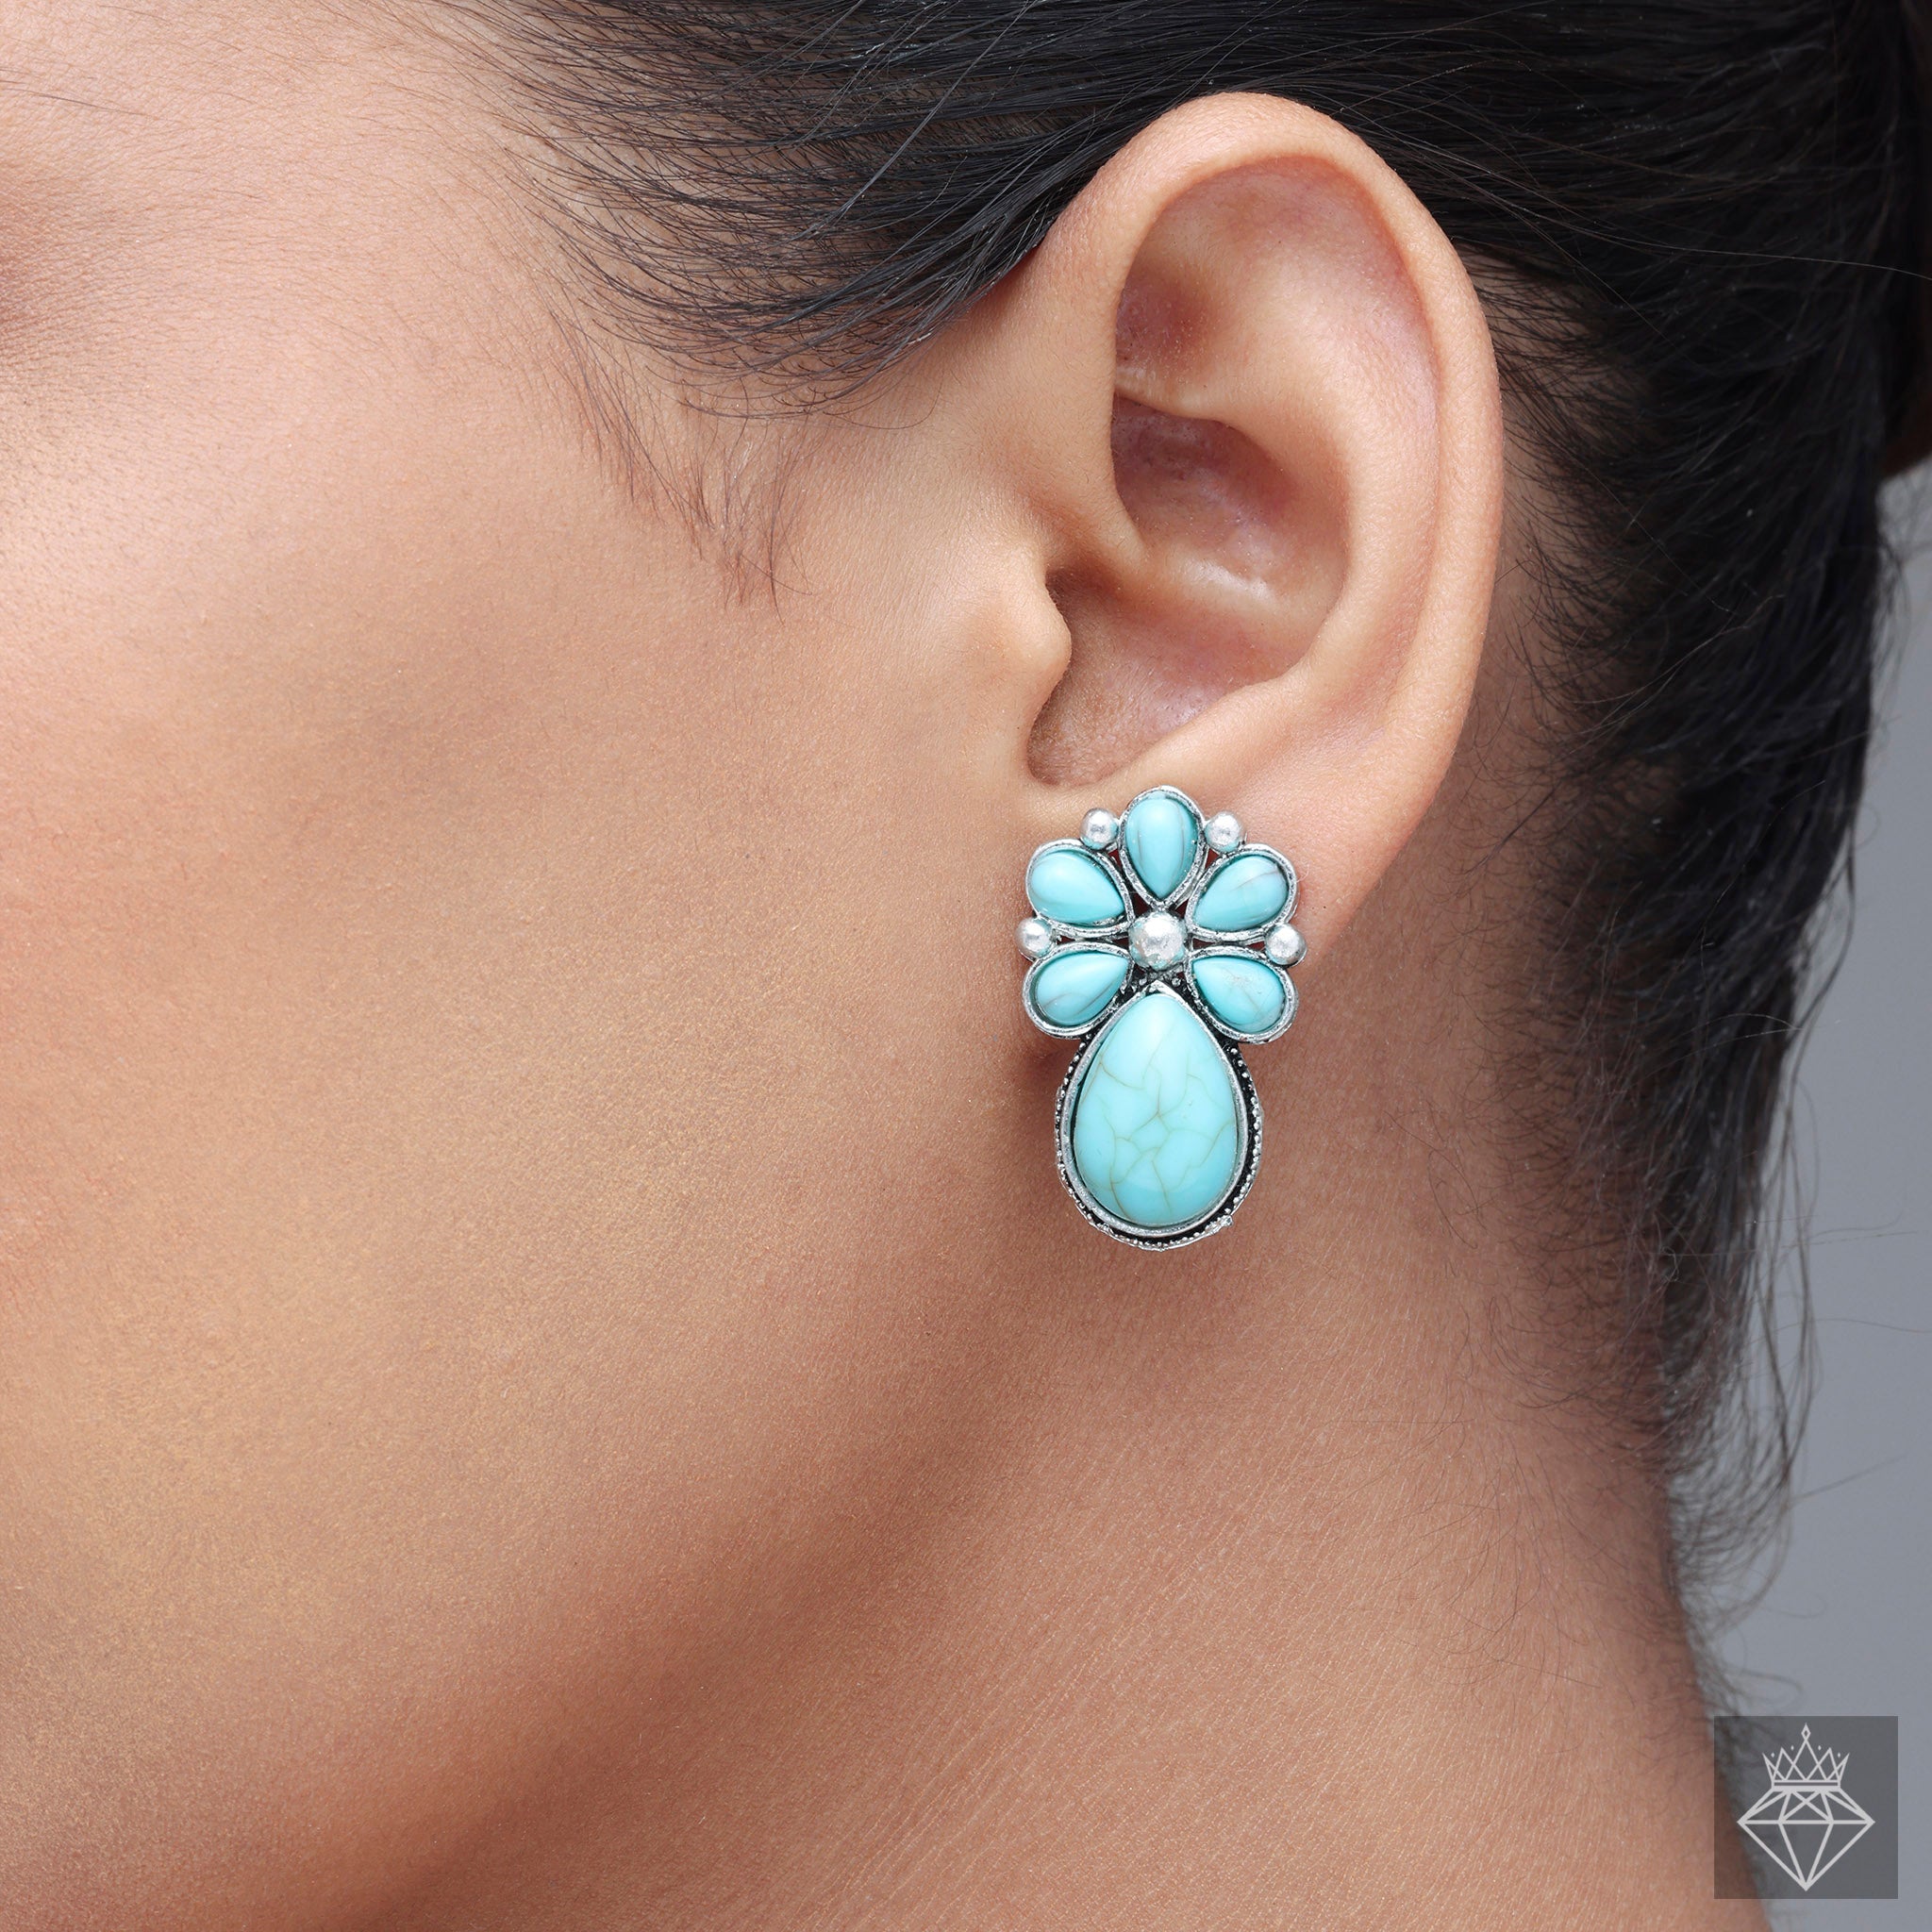 PRAO's Fashionable Floral Teardrop Earrings in Sea Green